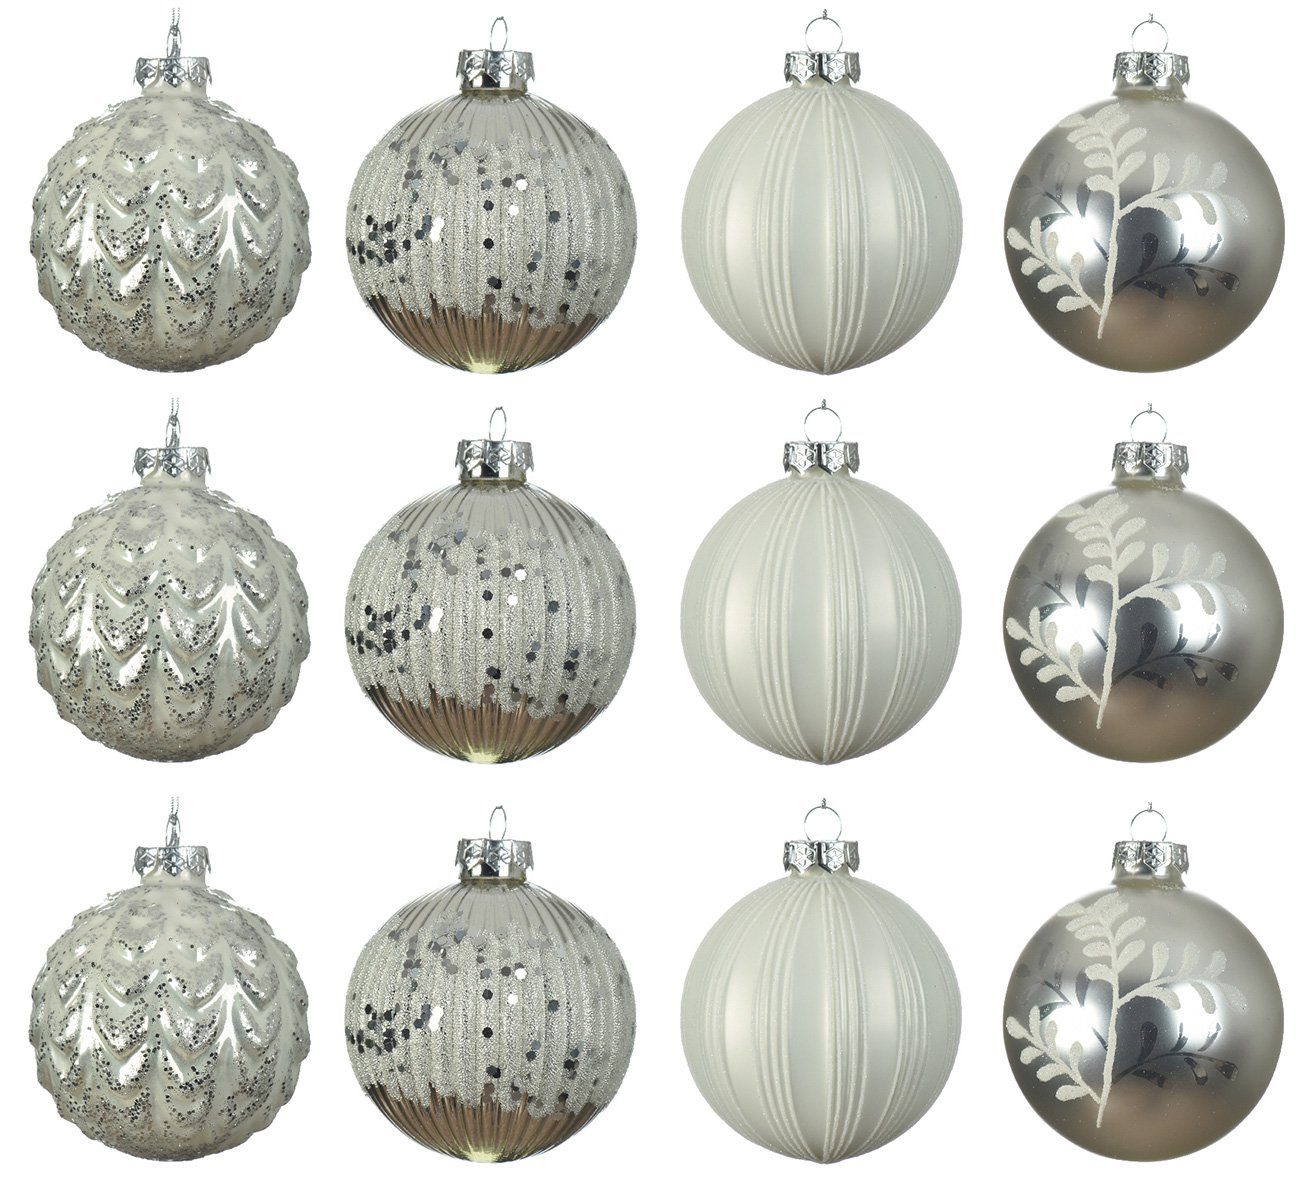 Decoris season decorations Weihnachtsbaumkugel, Weihnachtskugeln Glas 8cm mit Muster / Streifen 12er Set silber / weiß